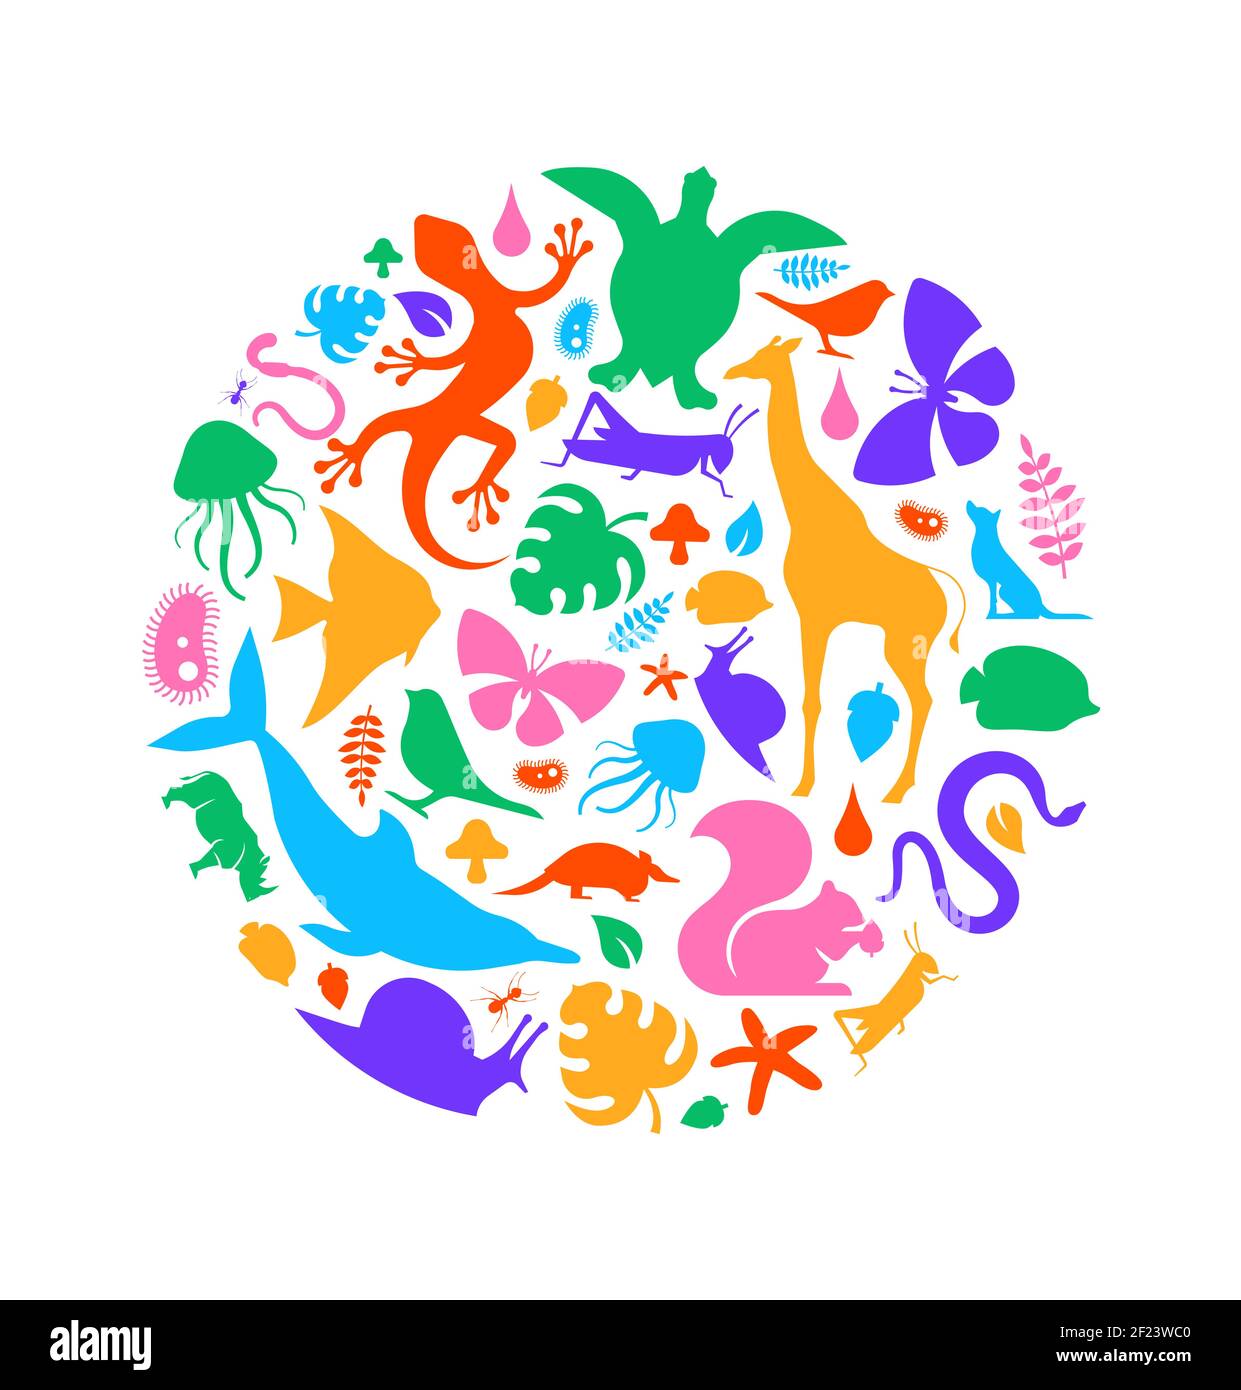 Diverses formes d'animaux faisant un cadre de cercle sur un arrière-plan blanc isolé. Silhouettes pour animaux colorés, illustration ronde pour bioplongeur de la vie sauvage Illustration de Vecteur